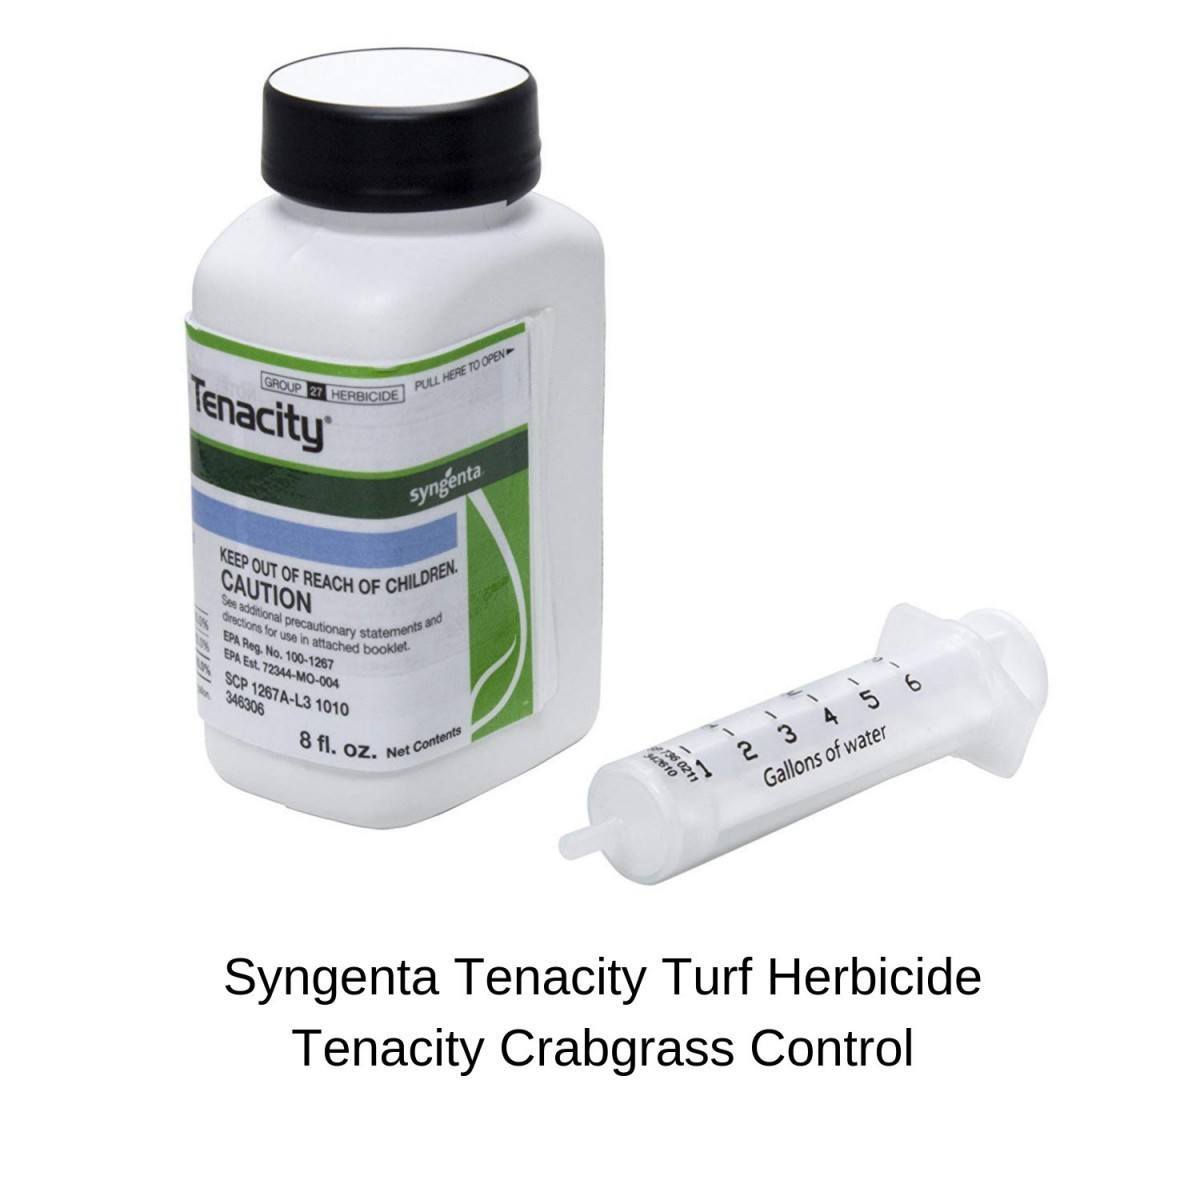 Syngenta Tenacity Turf Herbicide Tenacity Crabgrass Control